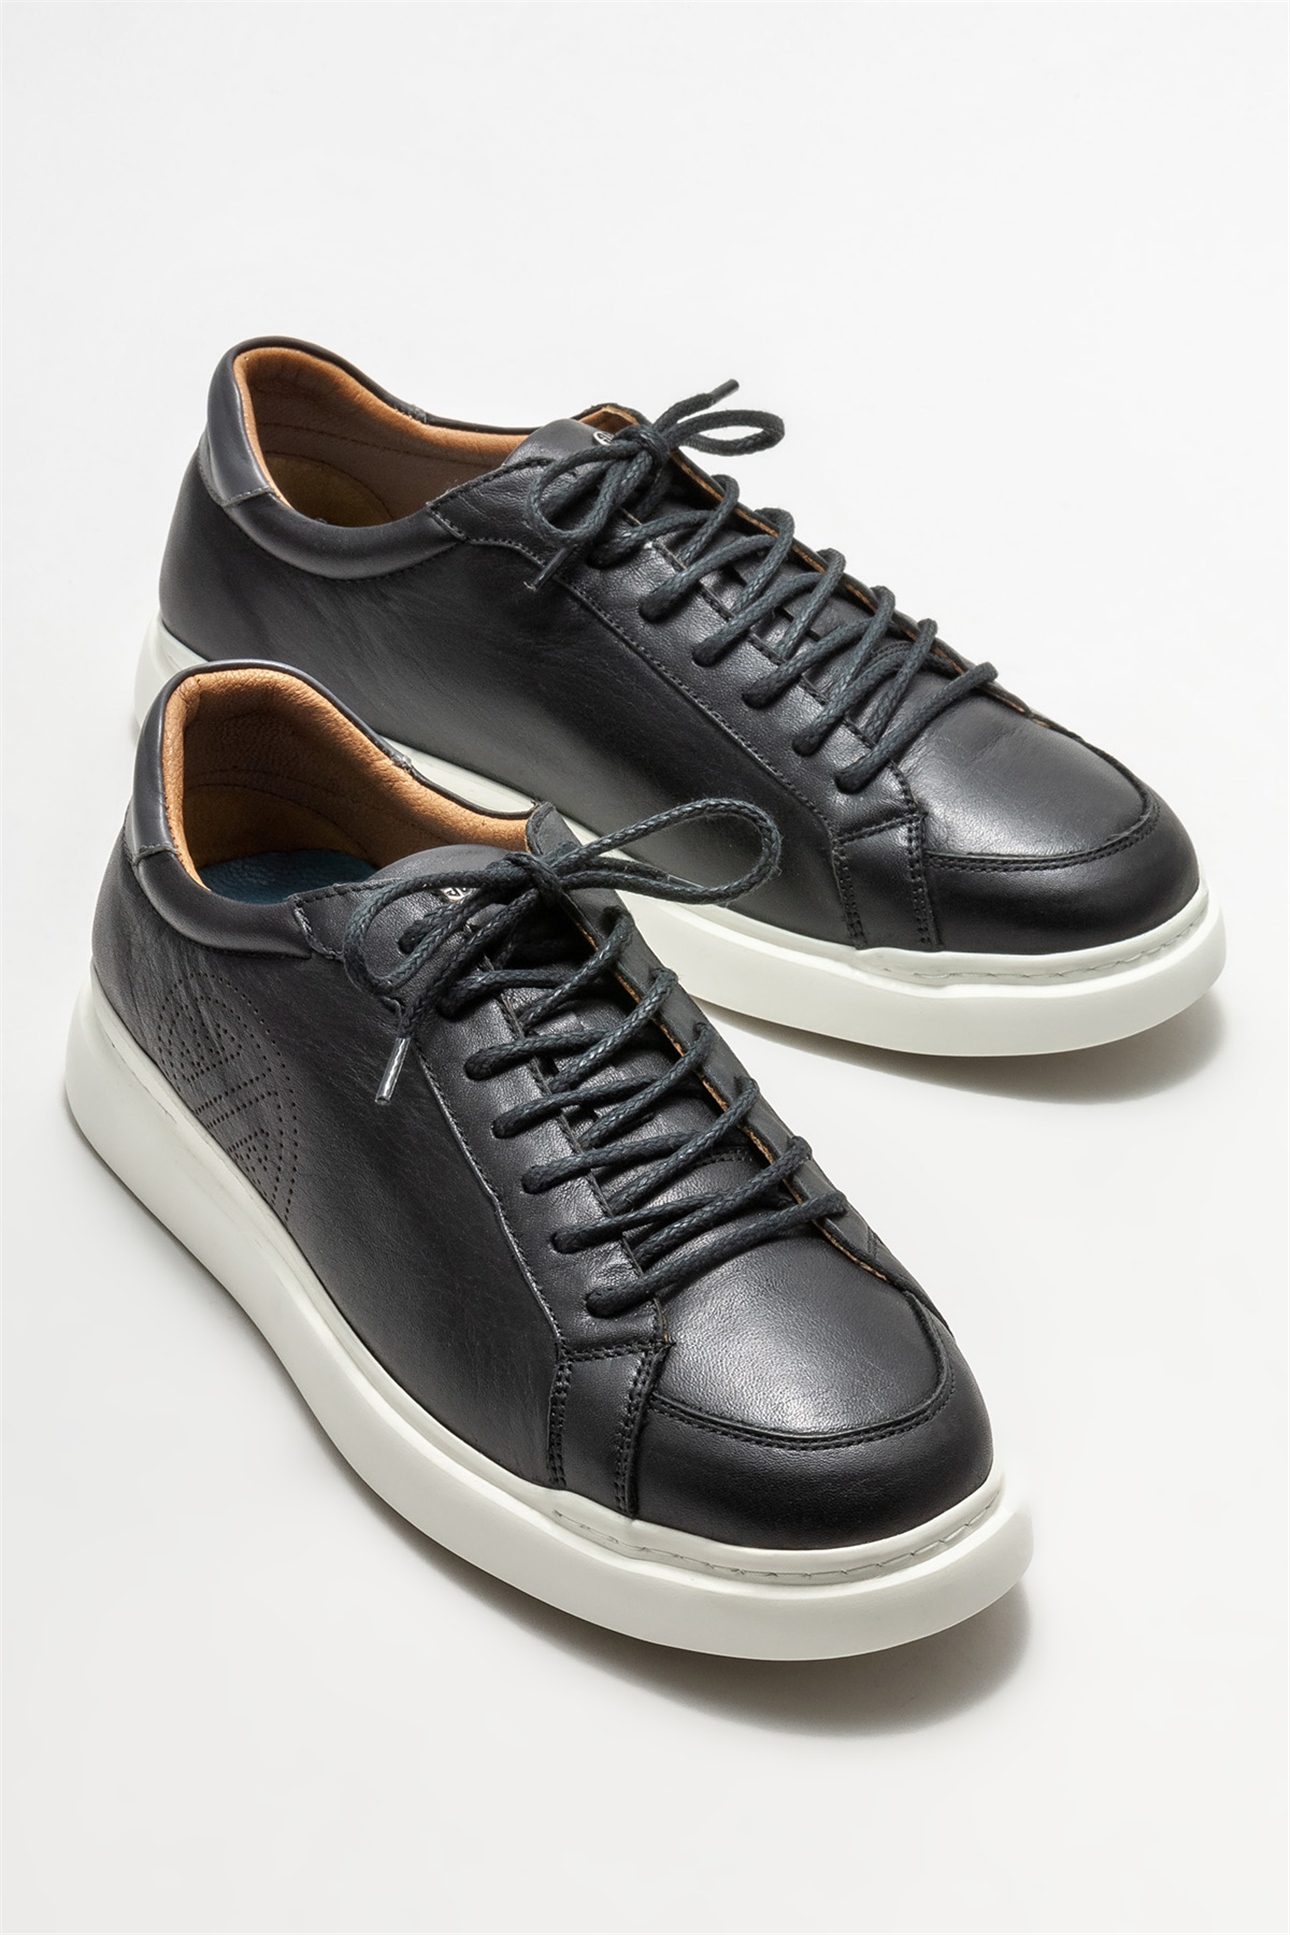 Siyah Deri Erkek Spor Ayakkabı Satın Al! COYE-01 Fiyatı | Elle Shoes